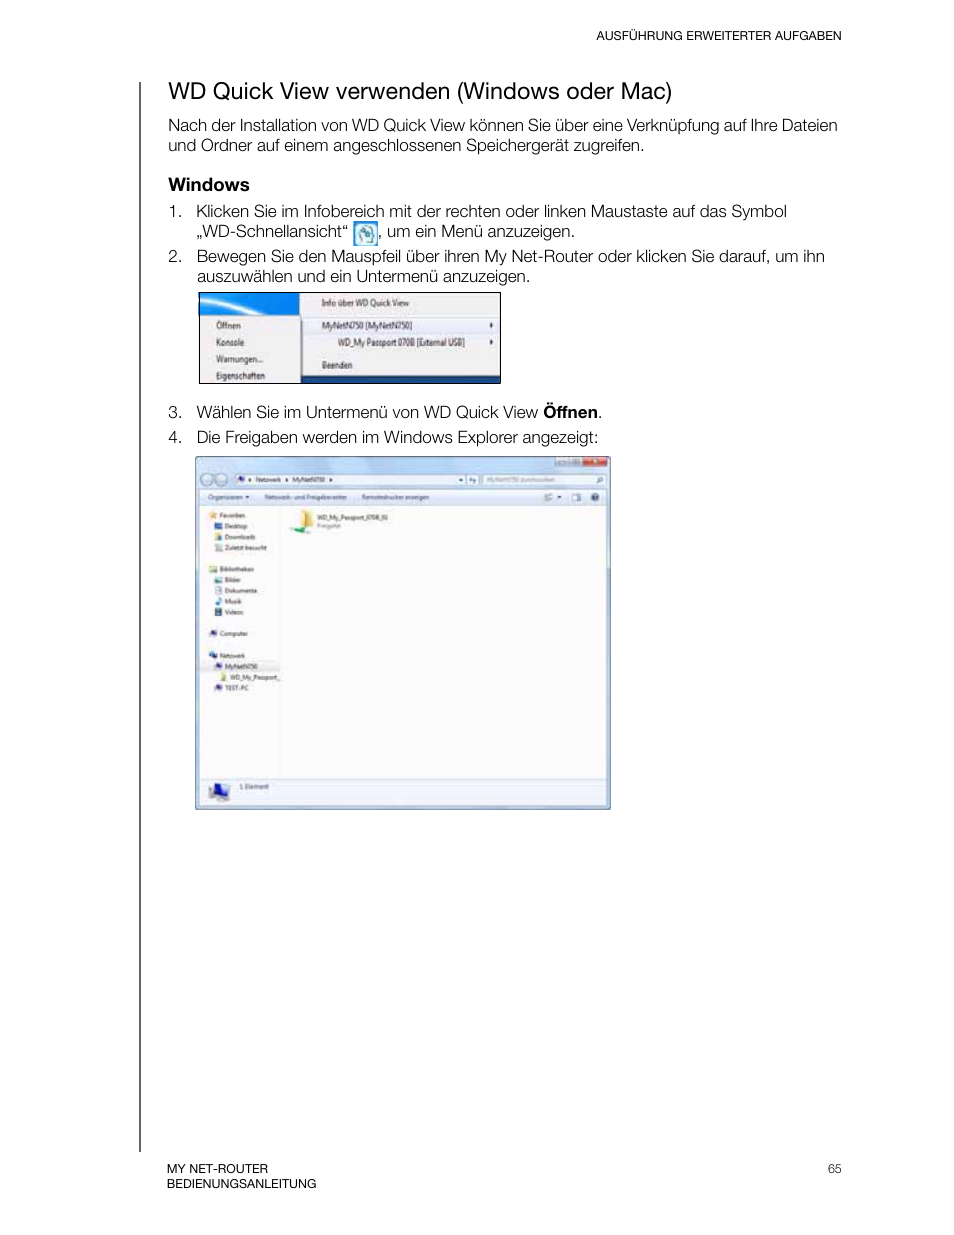 Wd quick view verwenden (windows oder mac) | Western Digital My Net N750 User Manual Benutzerhandbuch | Seite 69 / 96